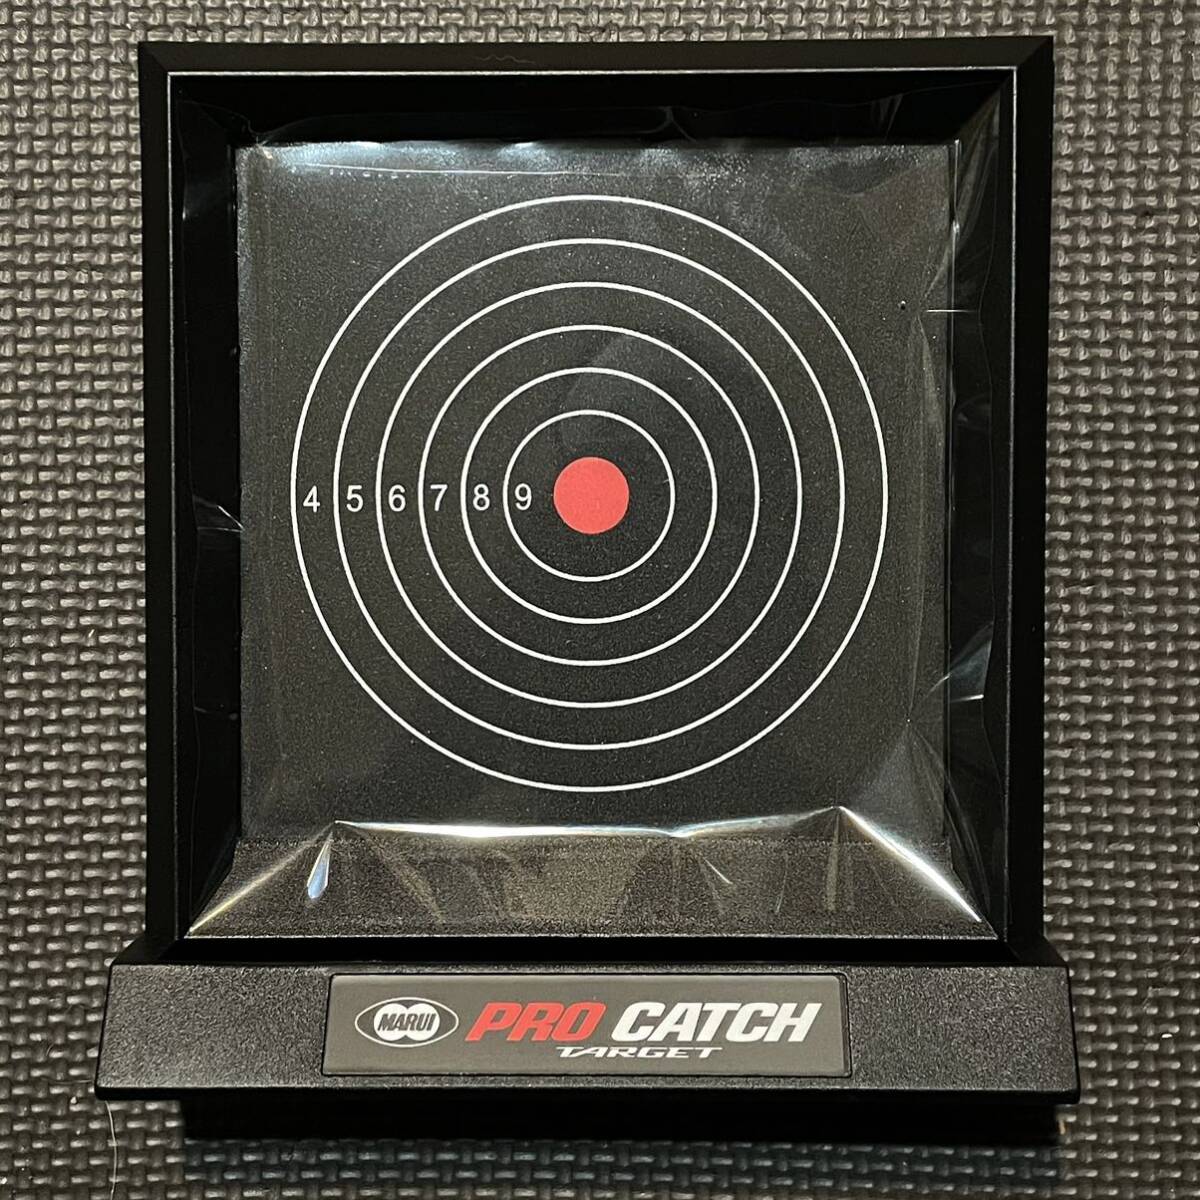  Tokyo Marui Pro Target Target attaching BOX set . seat . shooter worth seeing electric gun gas gun air gun toy gun military 